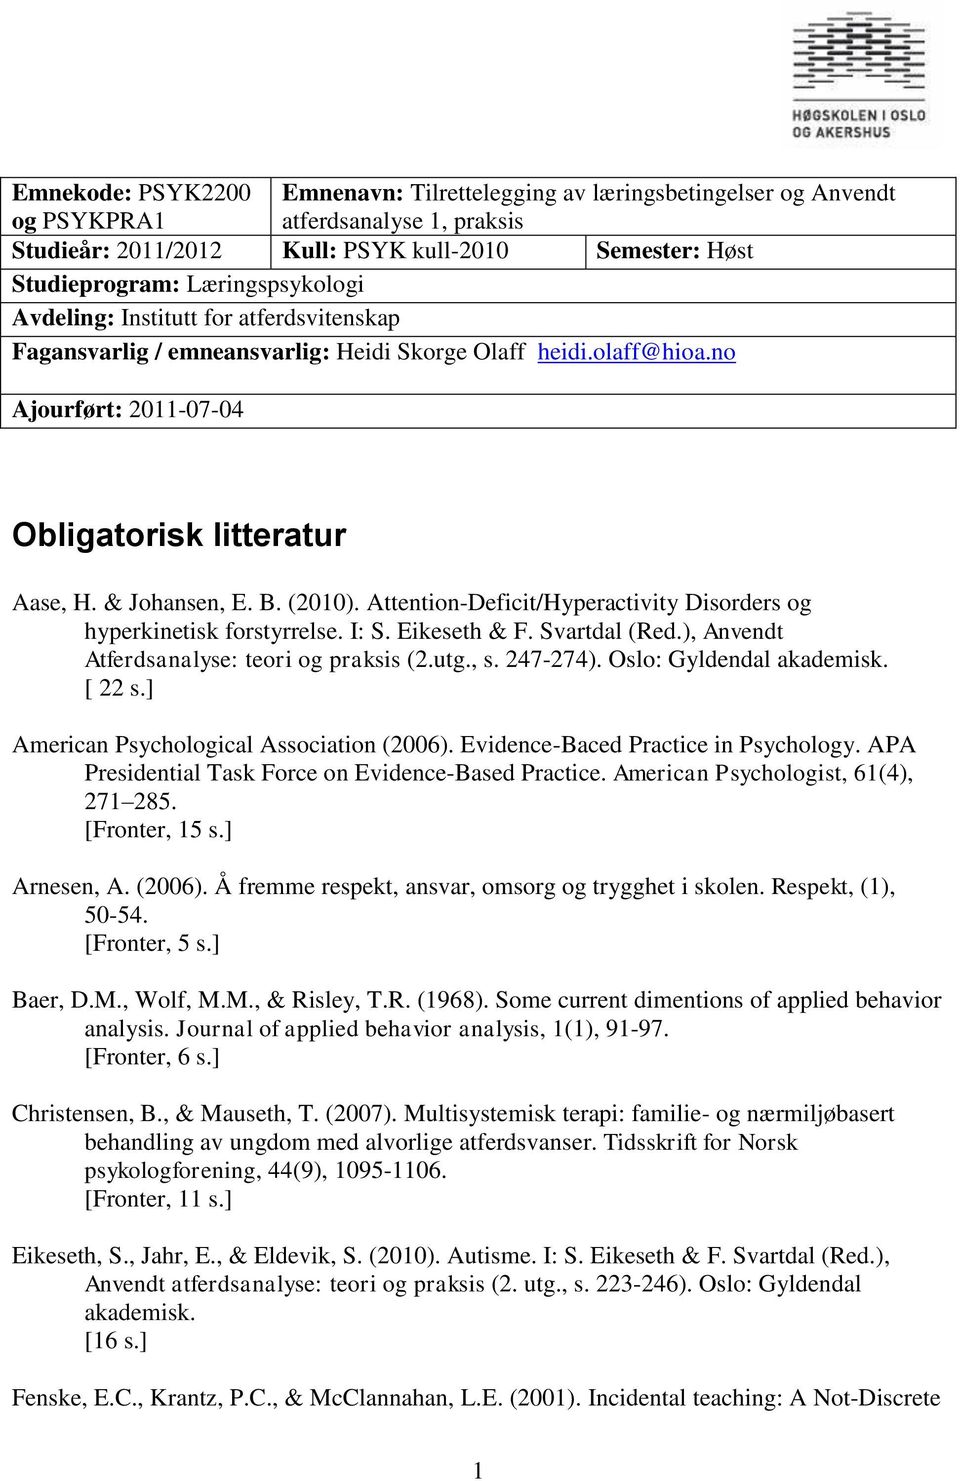 (2010). Attention-Deficit/Hyperactivity Disorders og hyperkinetisk forstyrrelse. I: S. Eikeseth & F. Svartdal (Red.), Anvendt Atferdsanalyse: teori og praksis (2.utg., s. 247-274).